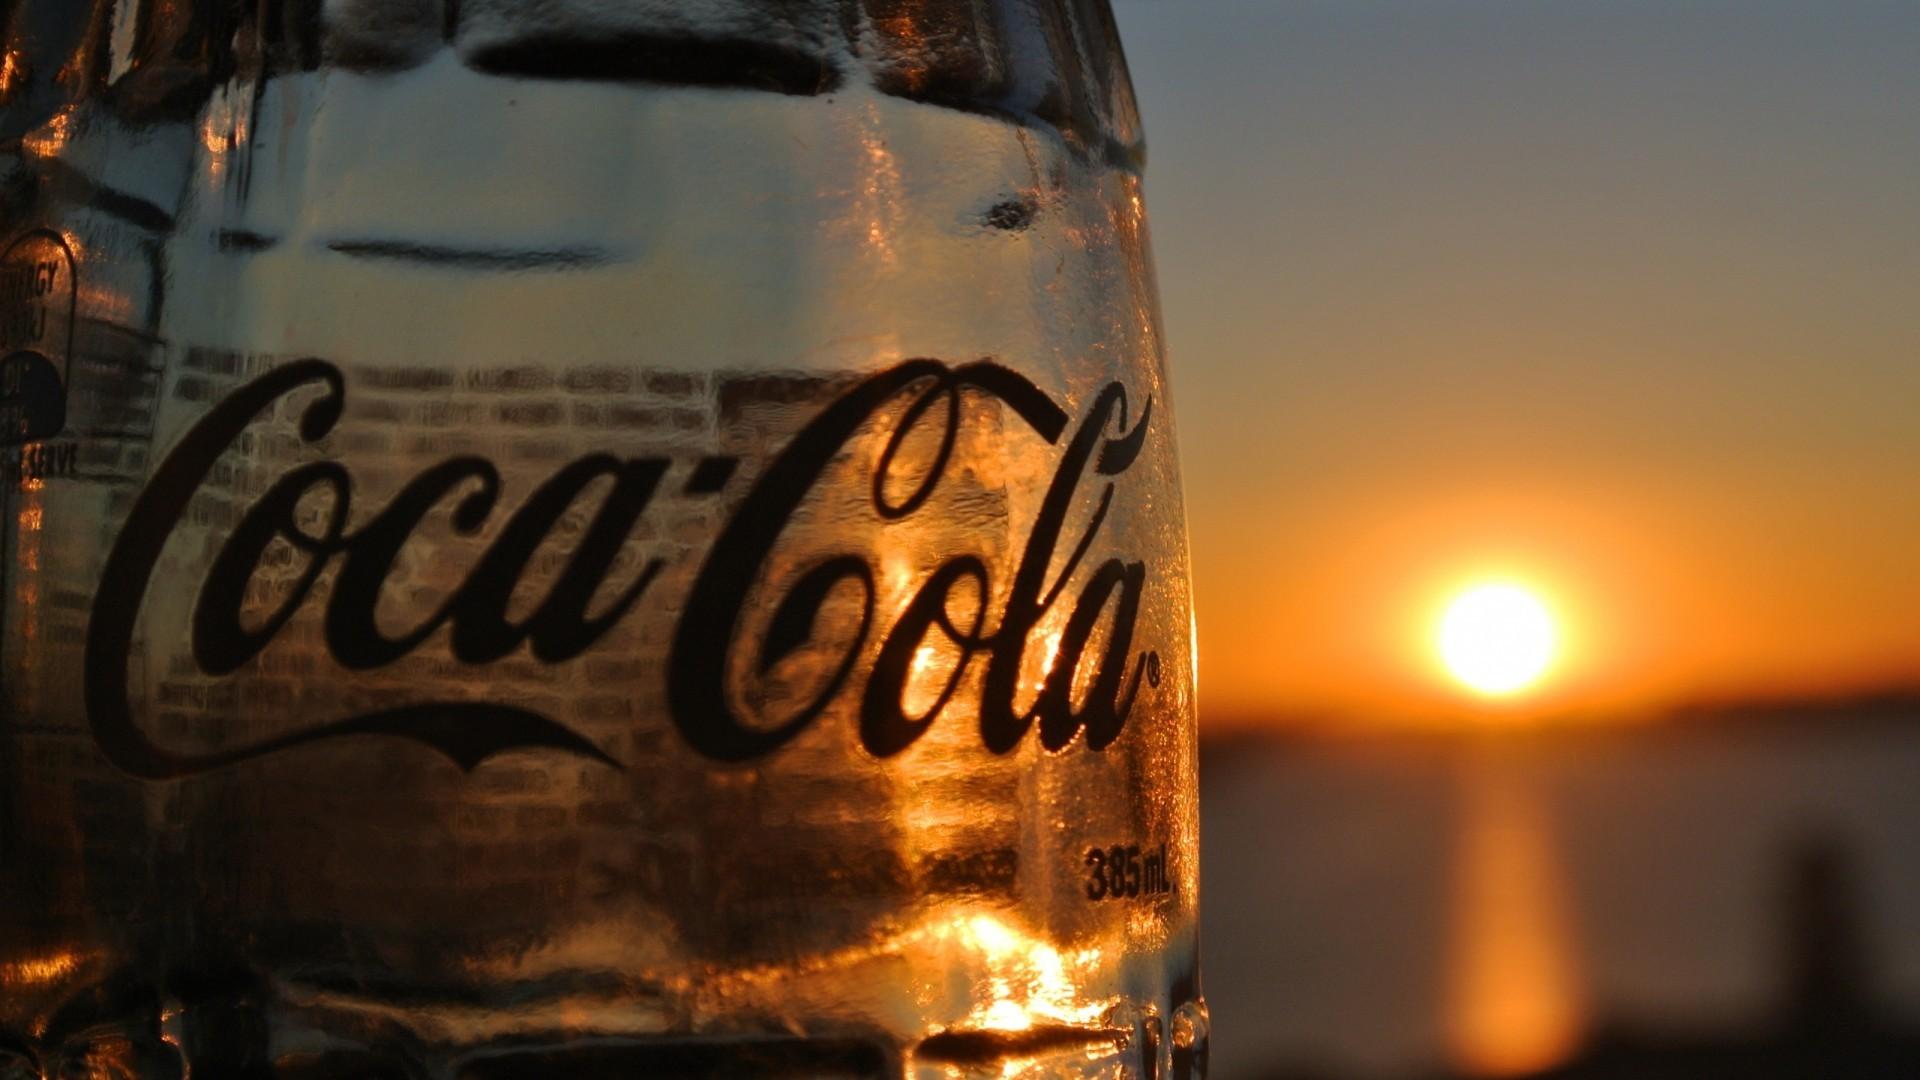 Coca Cola Bottles Coke Glass Sunset Wallpaper